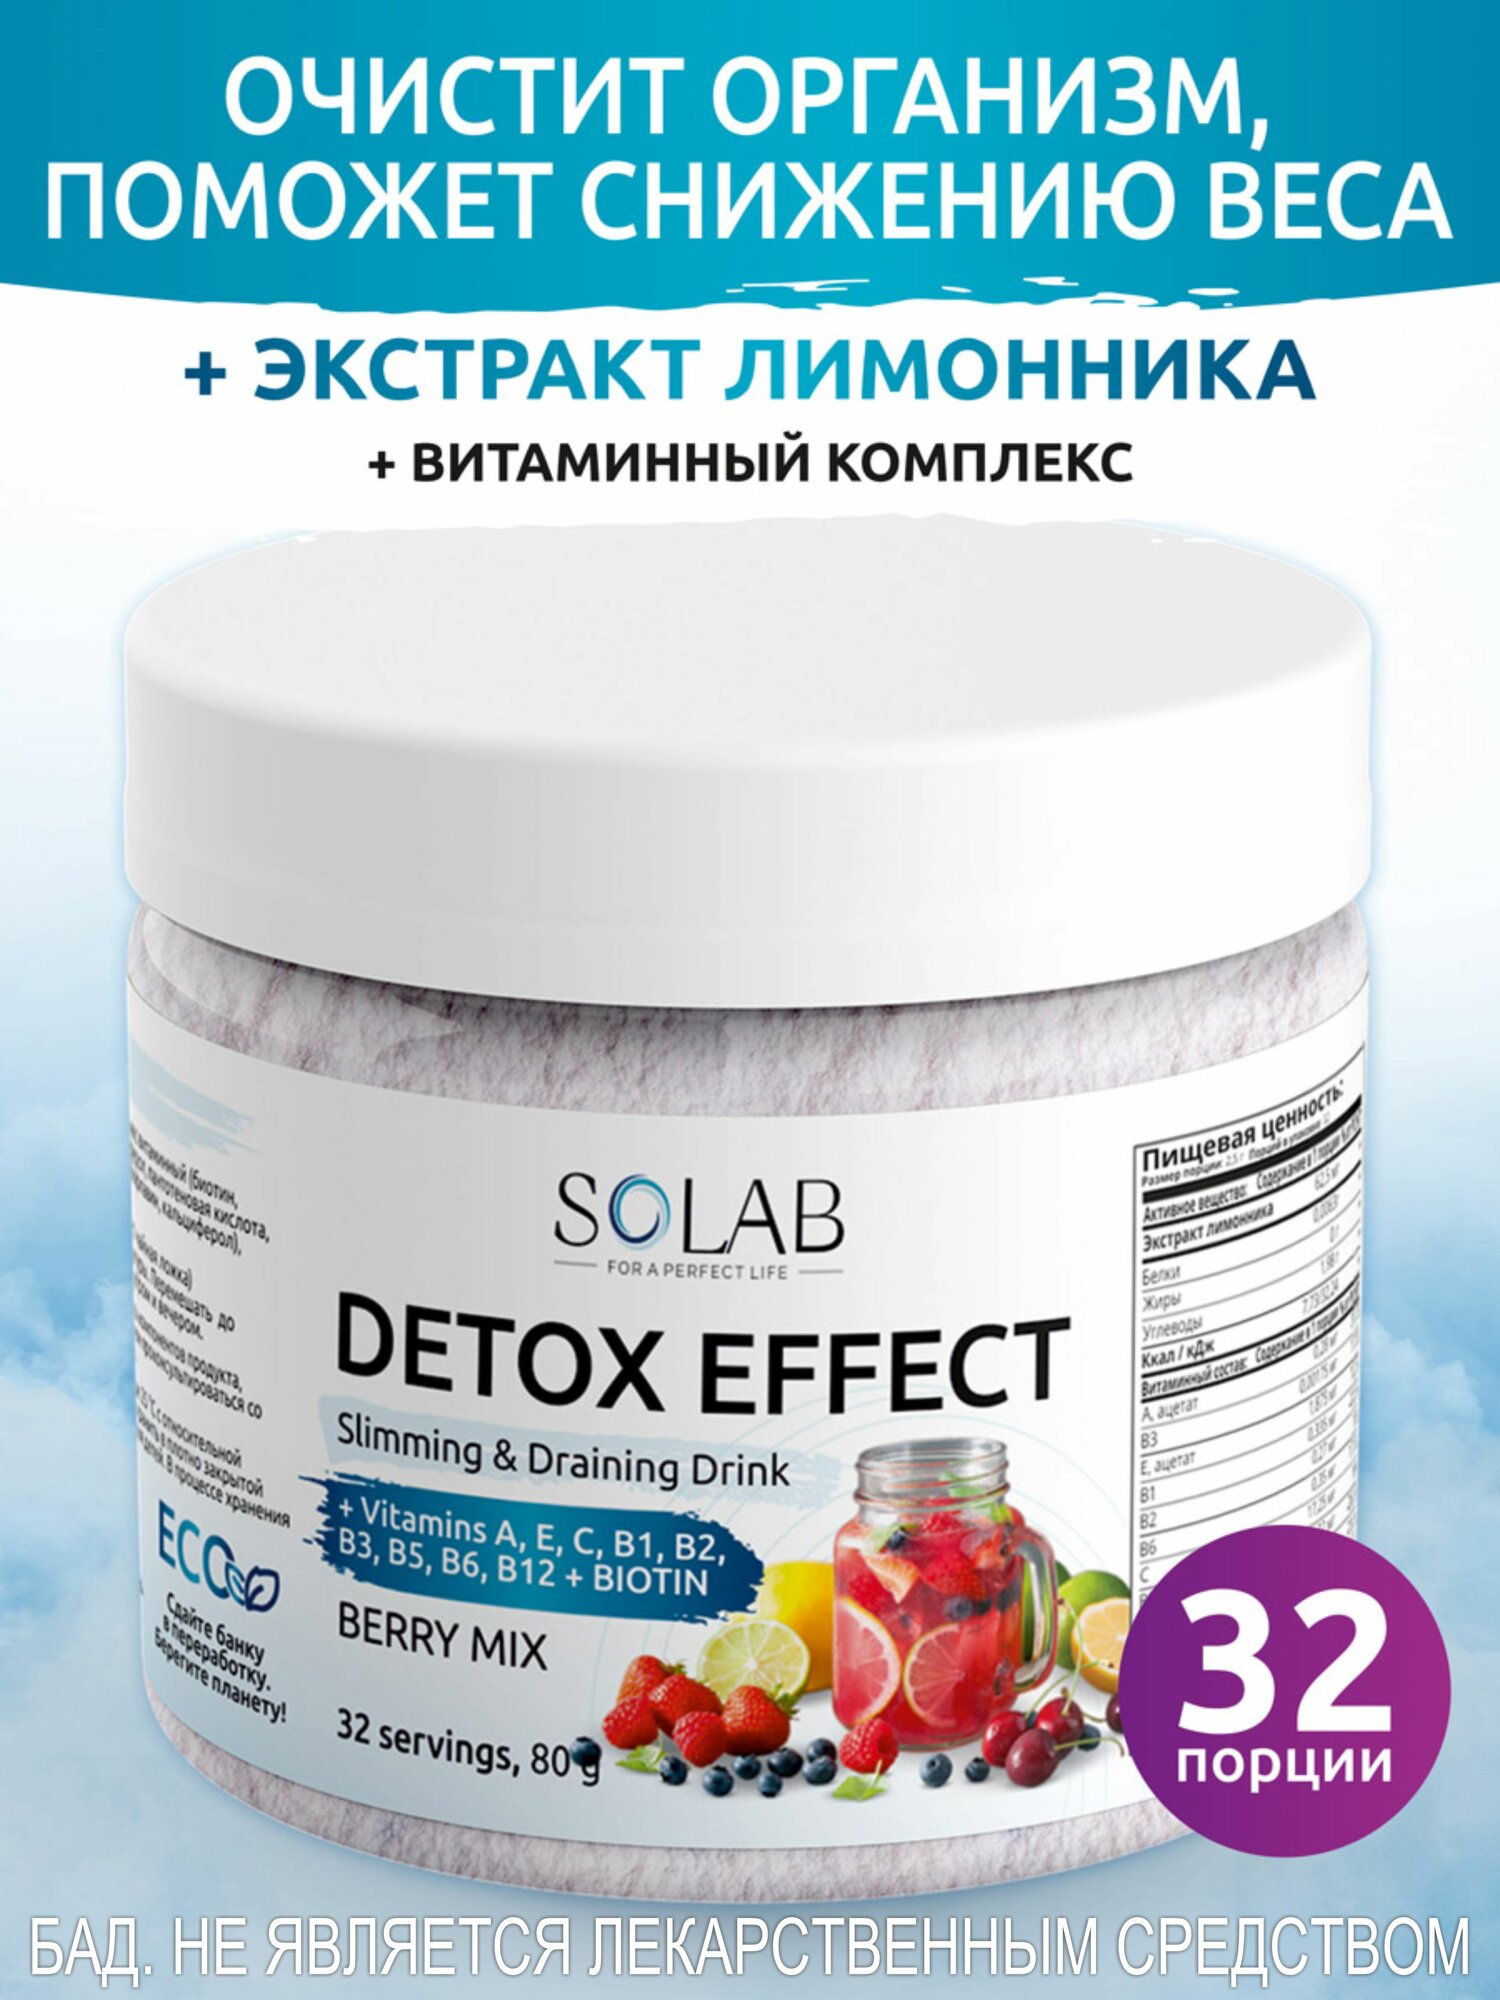 SOLAB Фитококтейль детокс Detox Slim Effect со вкусом ягоды, 32 порции с экстрактом лимонника для похудения, очищения